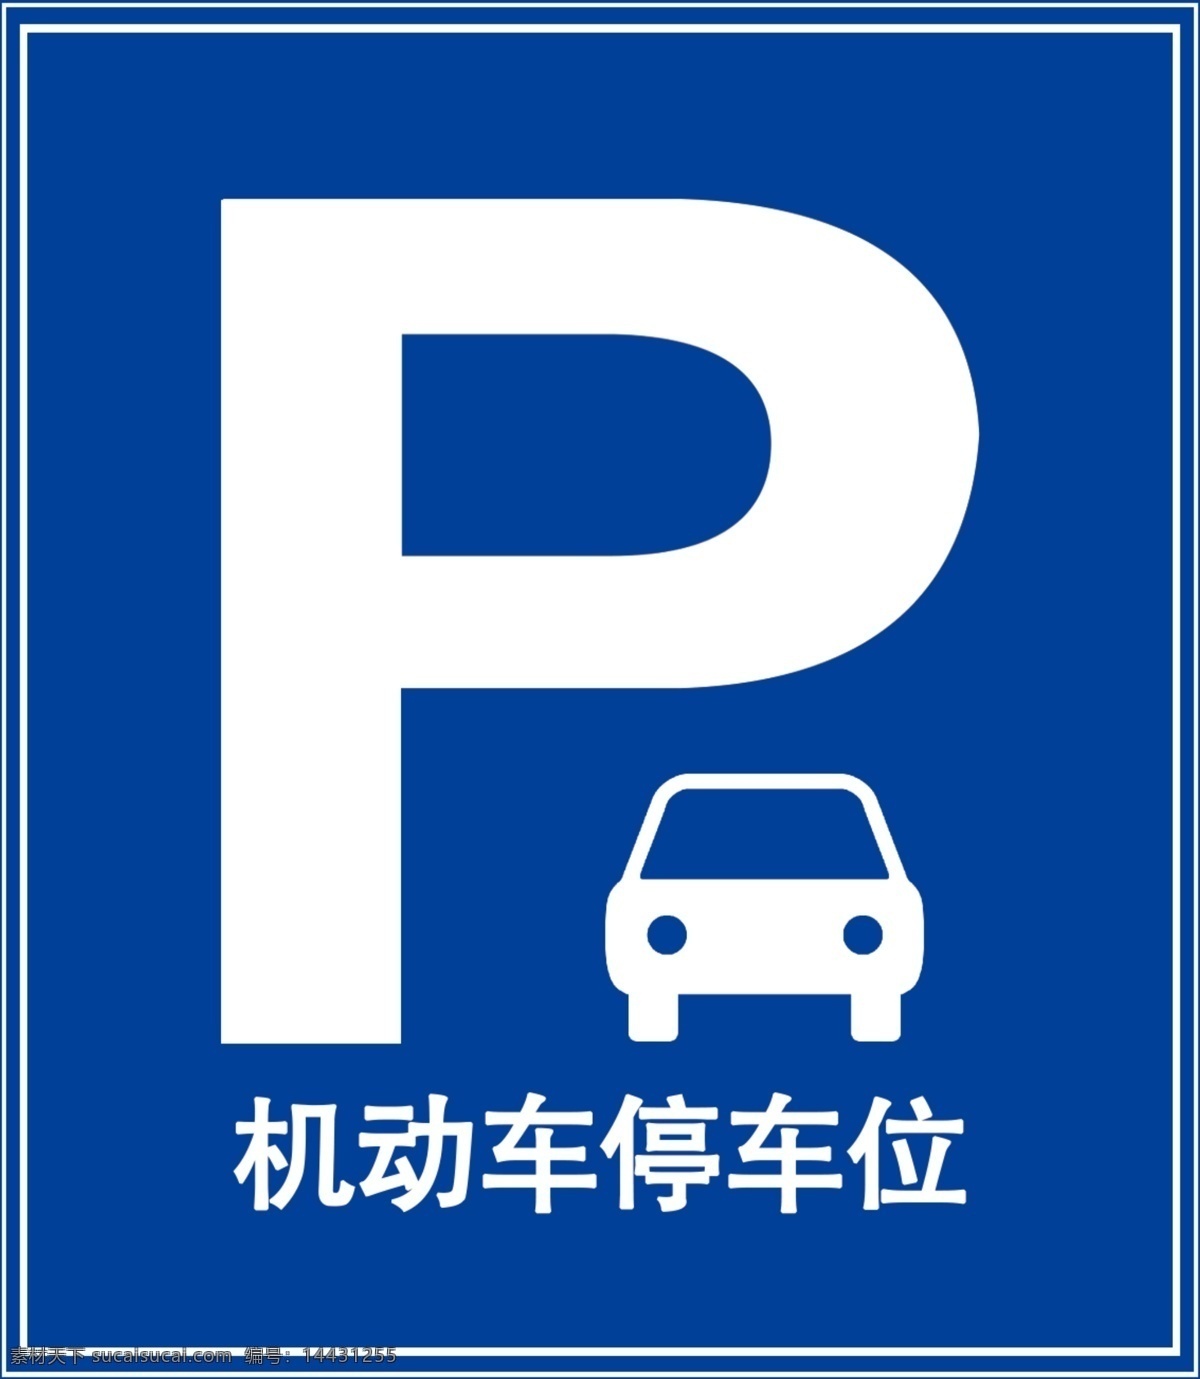 p 机动车停车位 停车位 蓝色 机动车 停车标识 标识